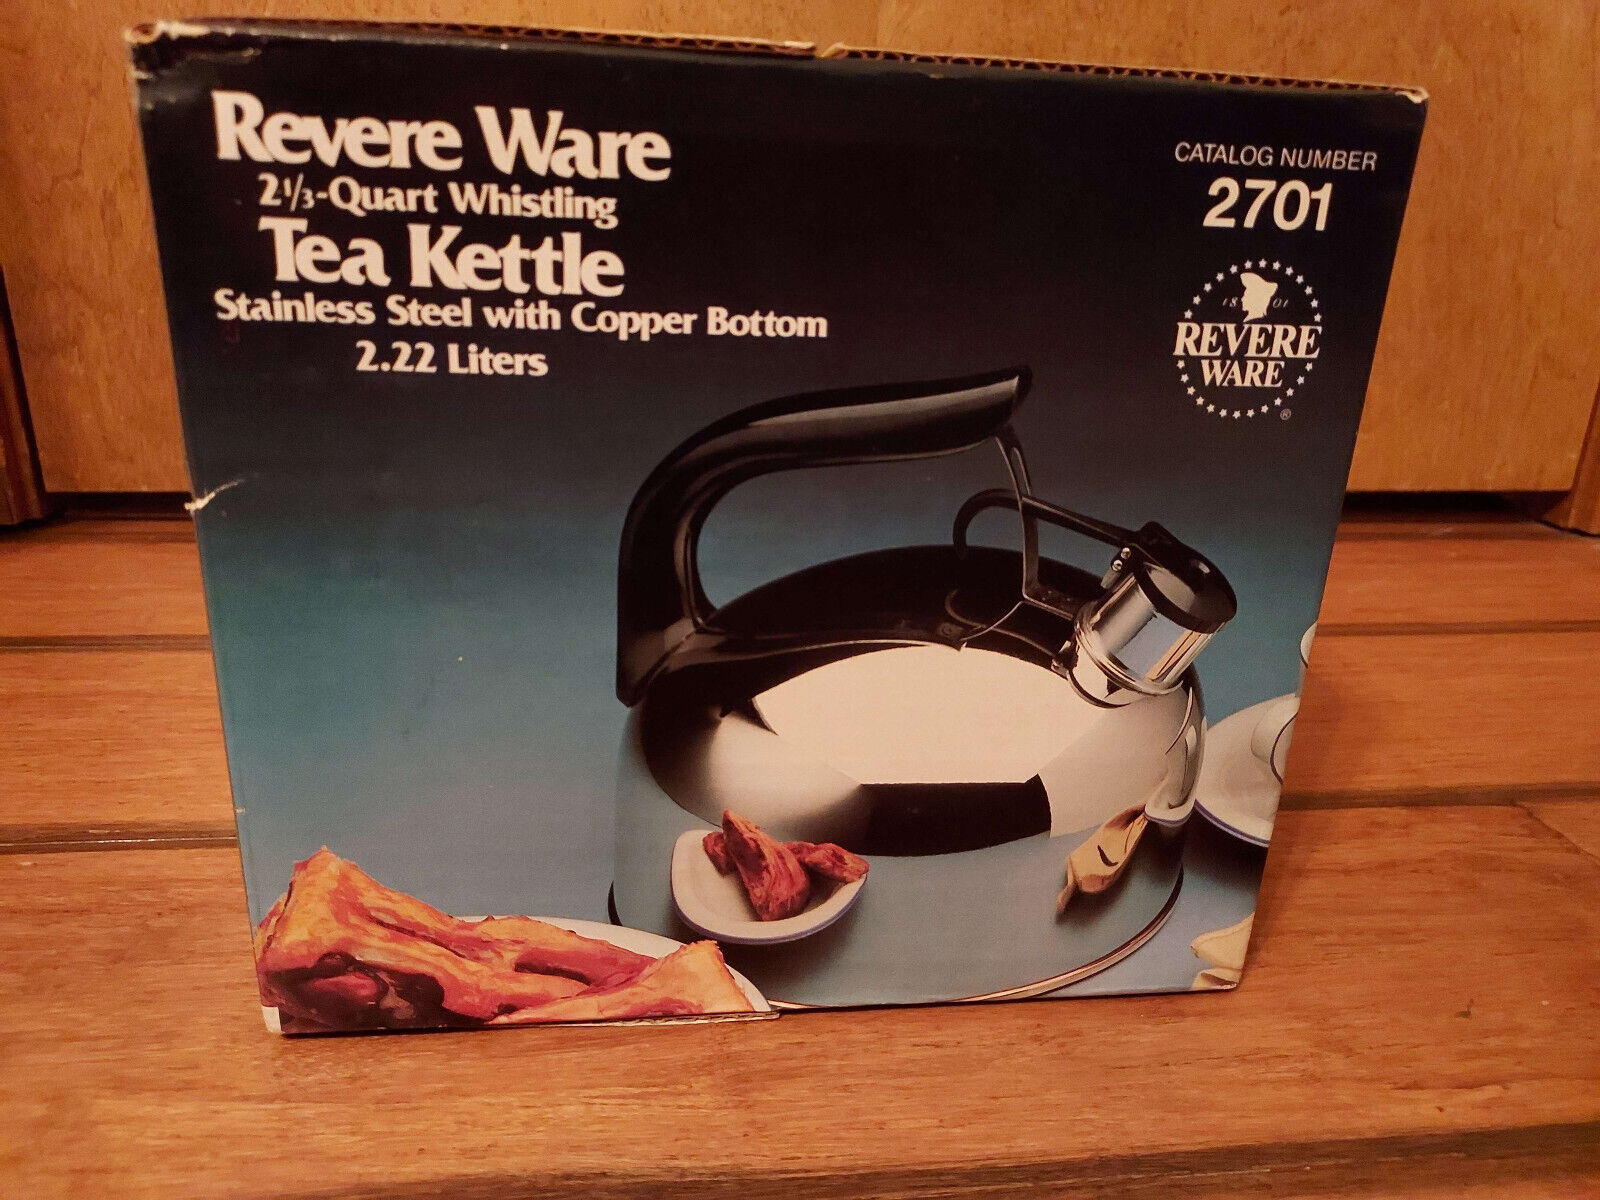 *NEW* Revere Ware 2 1/3 Quart Whistling Tea Kettle Stainless Steel Copper Bottom